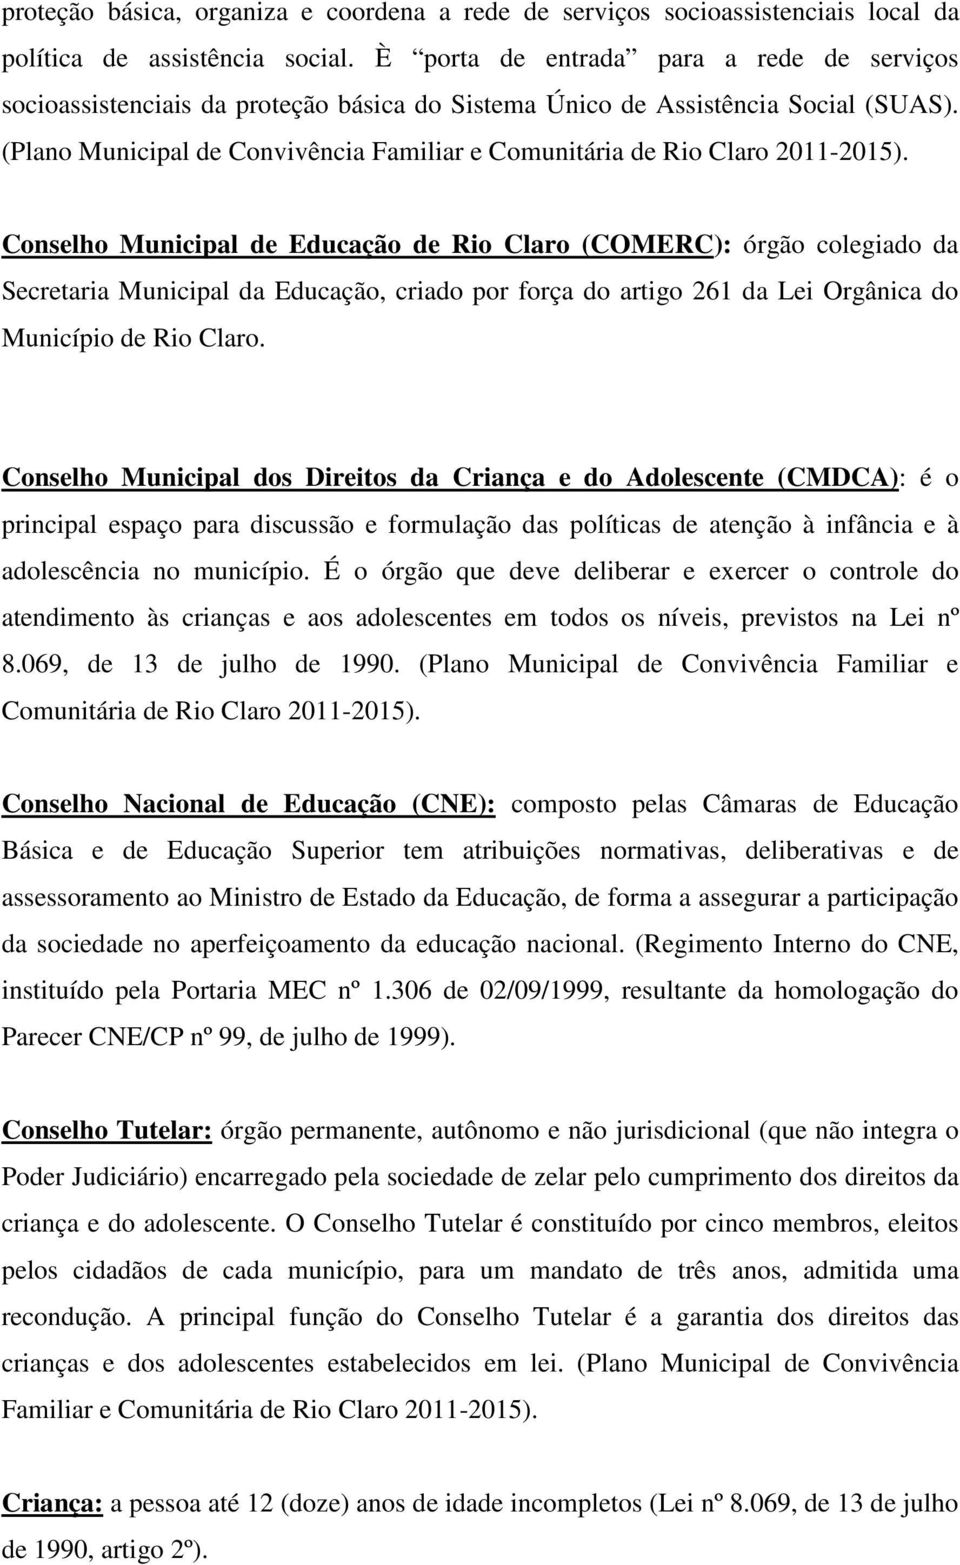 (Plano Municipal de Convivência Familiar e Comunitária de Rio Claro 2011-2015).